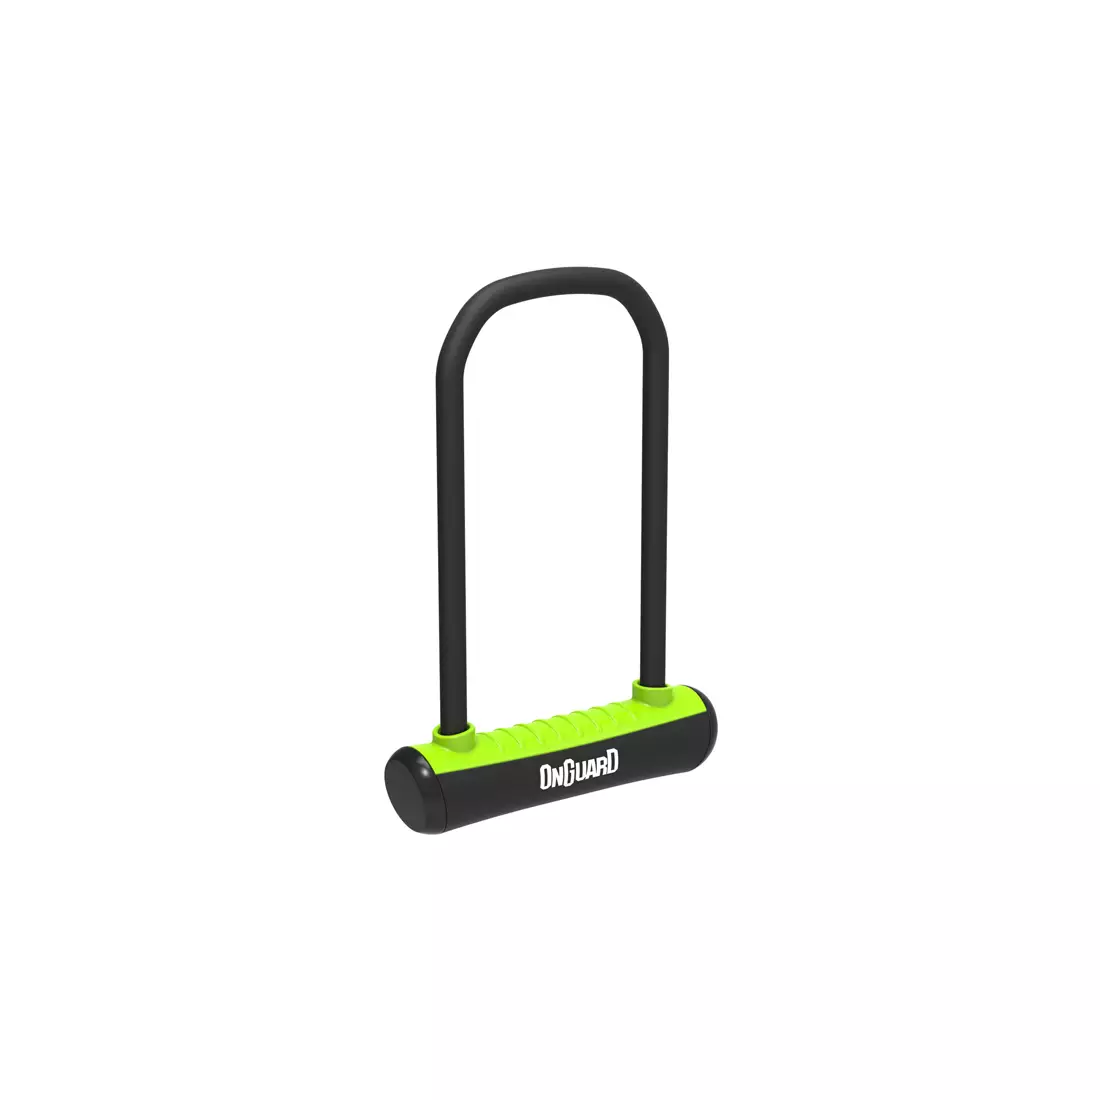 ONGUARD Fahrradverschluss Neon u-lock 292mm + 2 x Schlüssel, grün ONG-8152GR